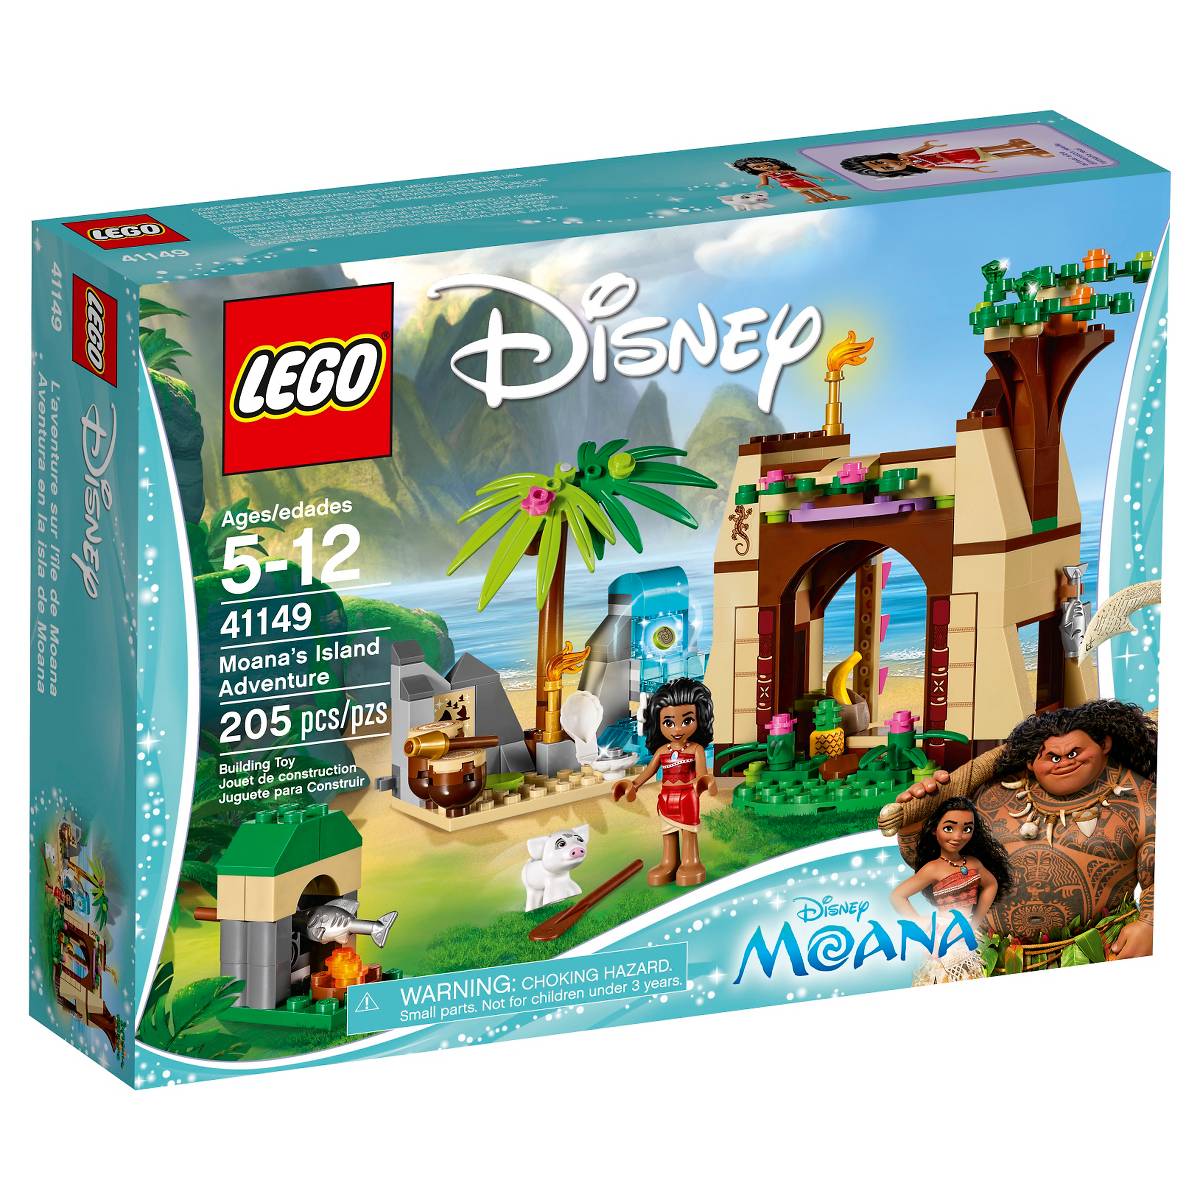 Disney at Heart: Moana Lego Sets